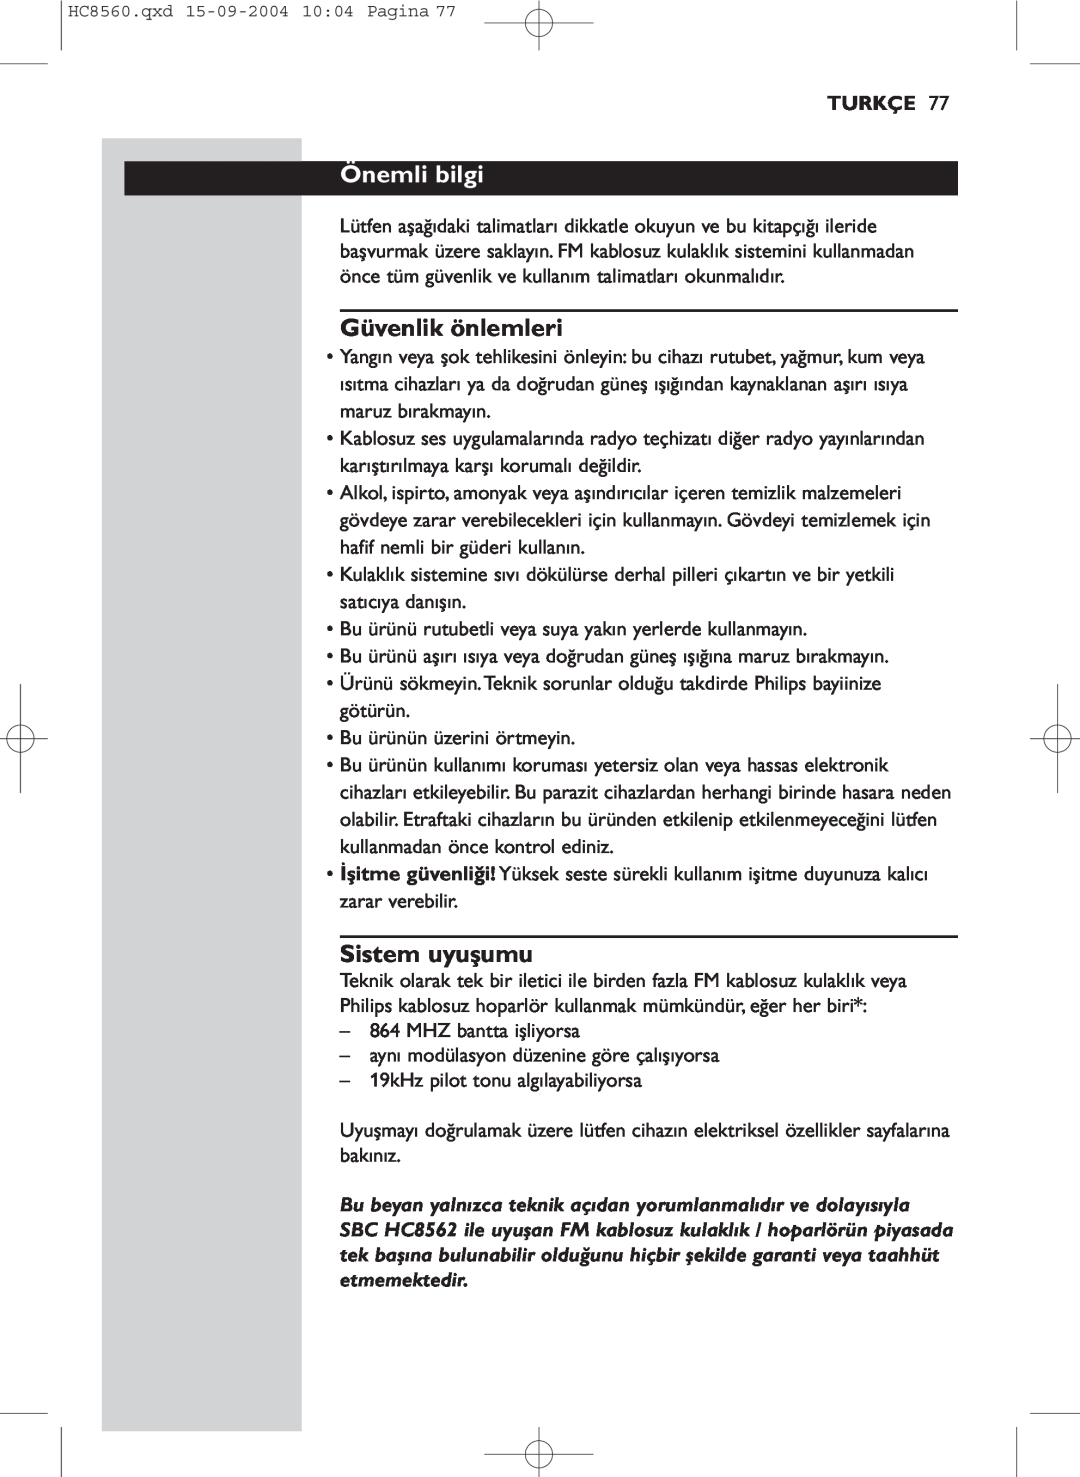 Philips HC 8560 manual Önemli bilgi, Güvenlik önlemleri, Sistem uyuşumu, Turkçe 